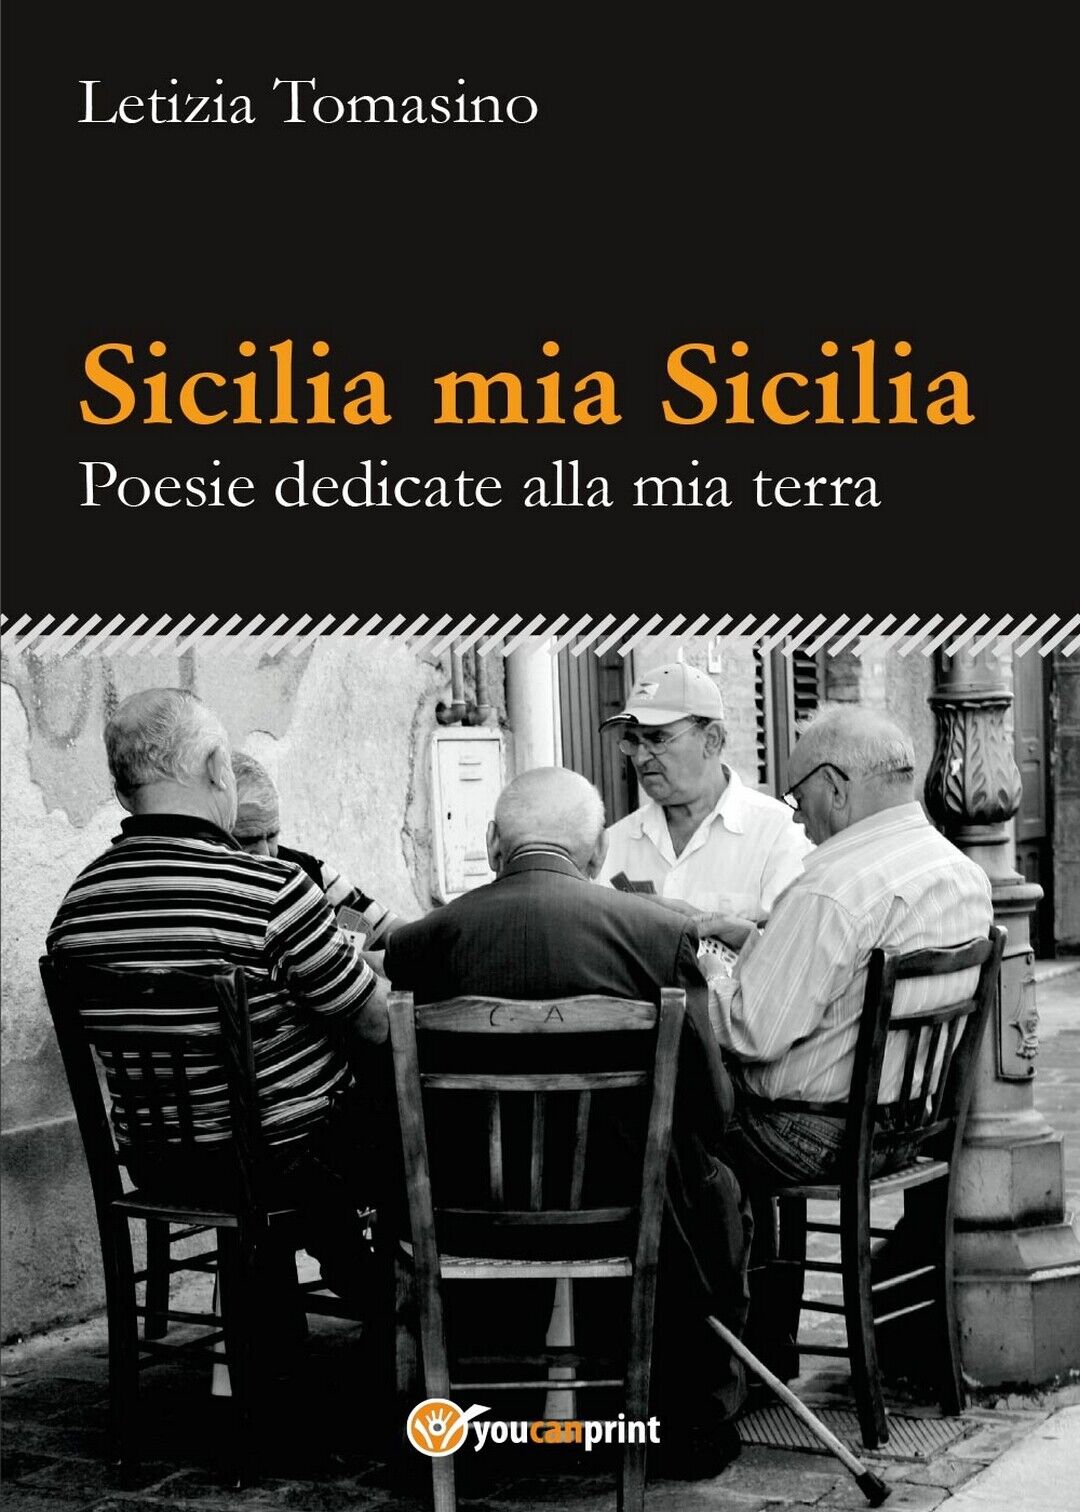 Sicilia mia Sicilia - Poesie dedicate alla mia terra  di Letizia Tomasino,  2016